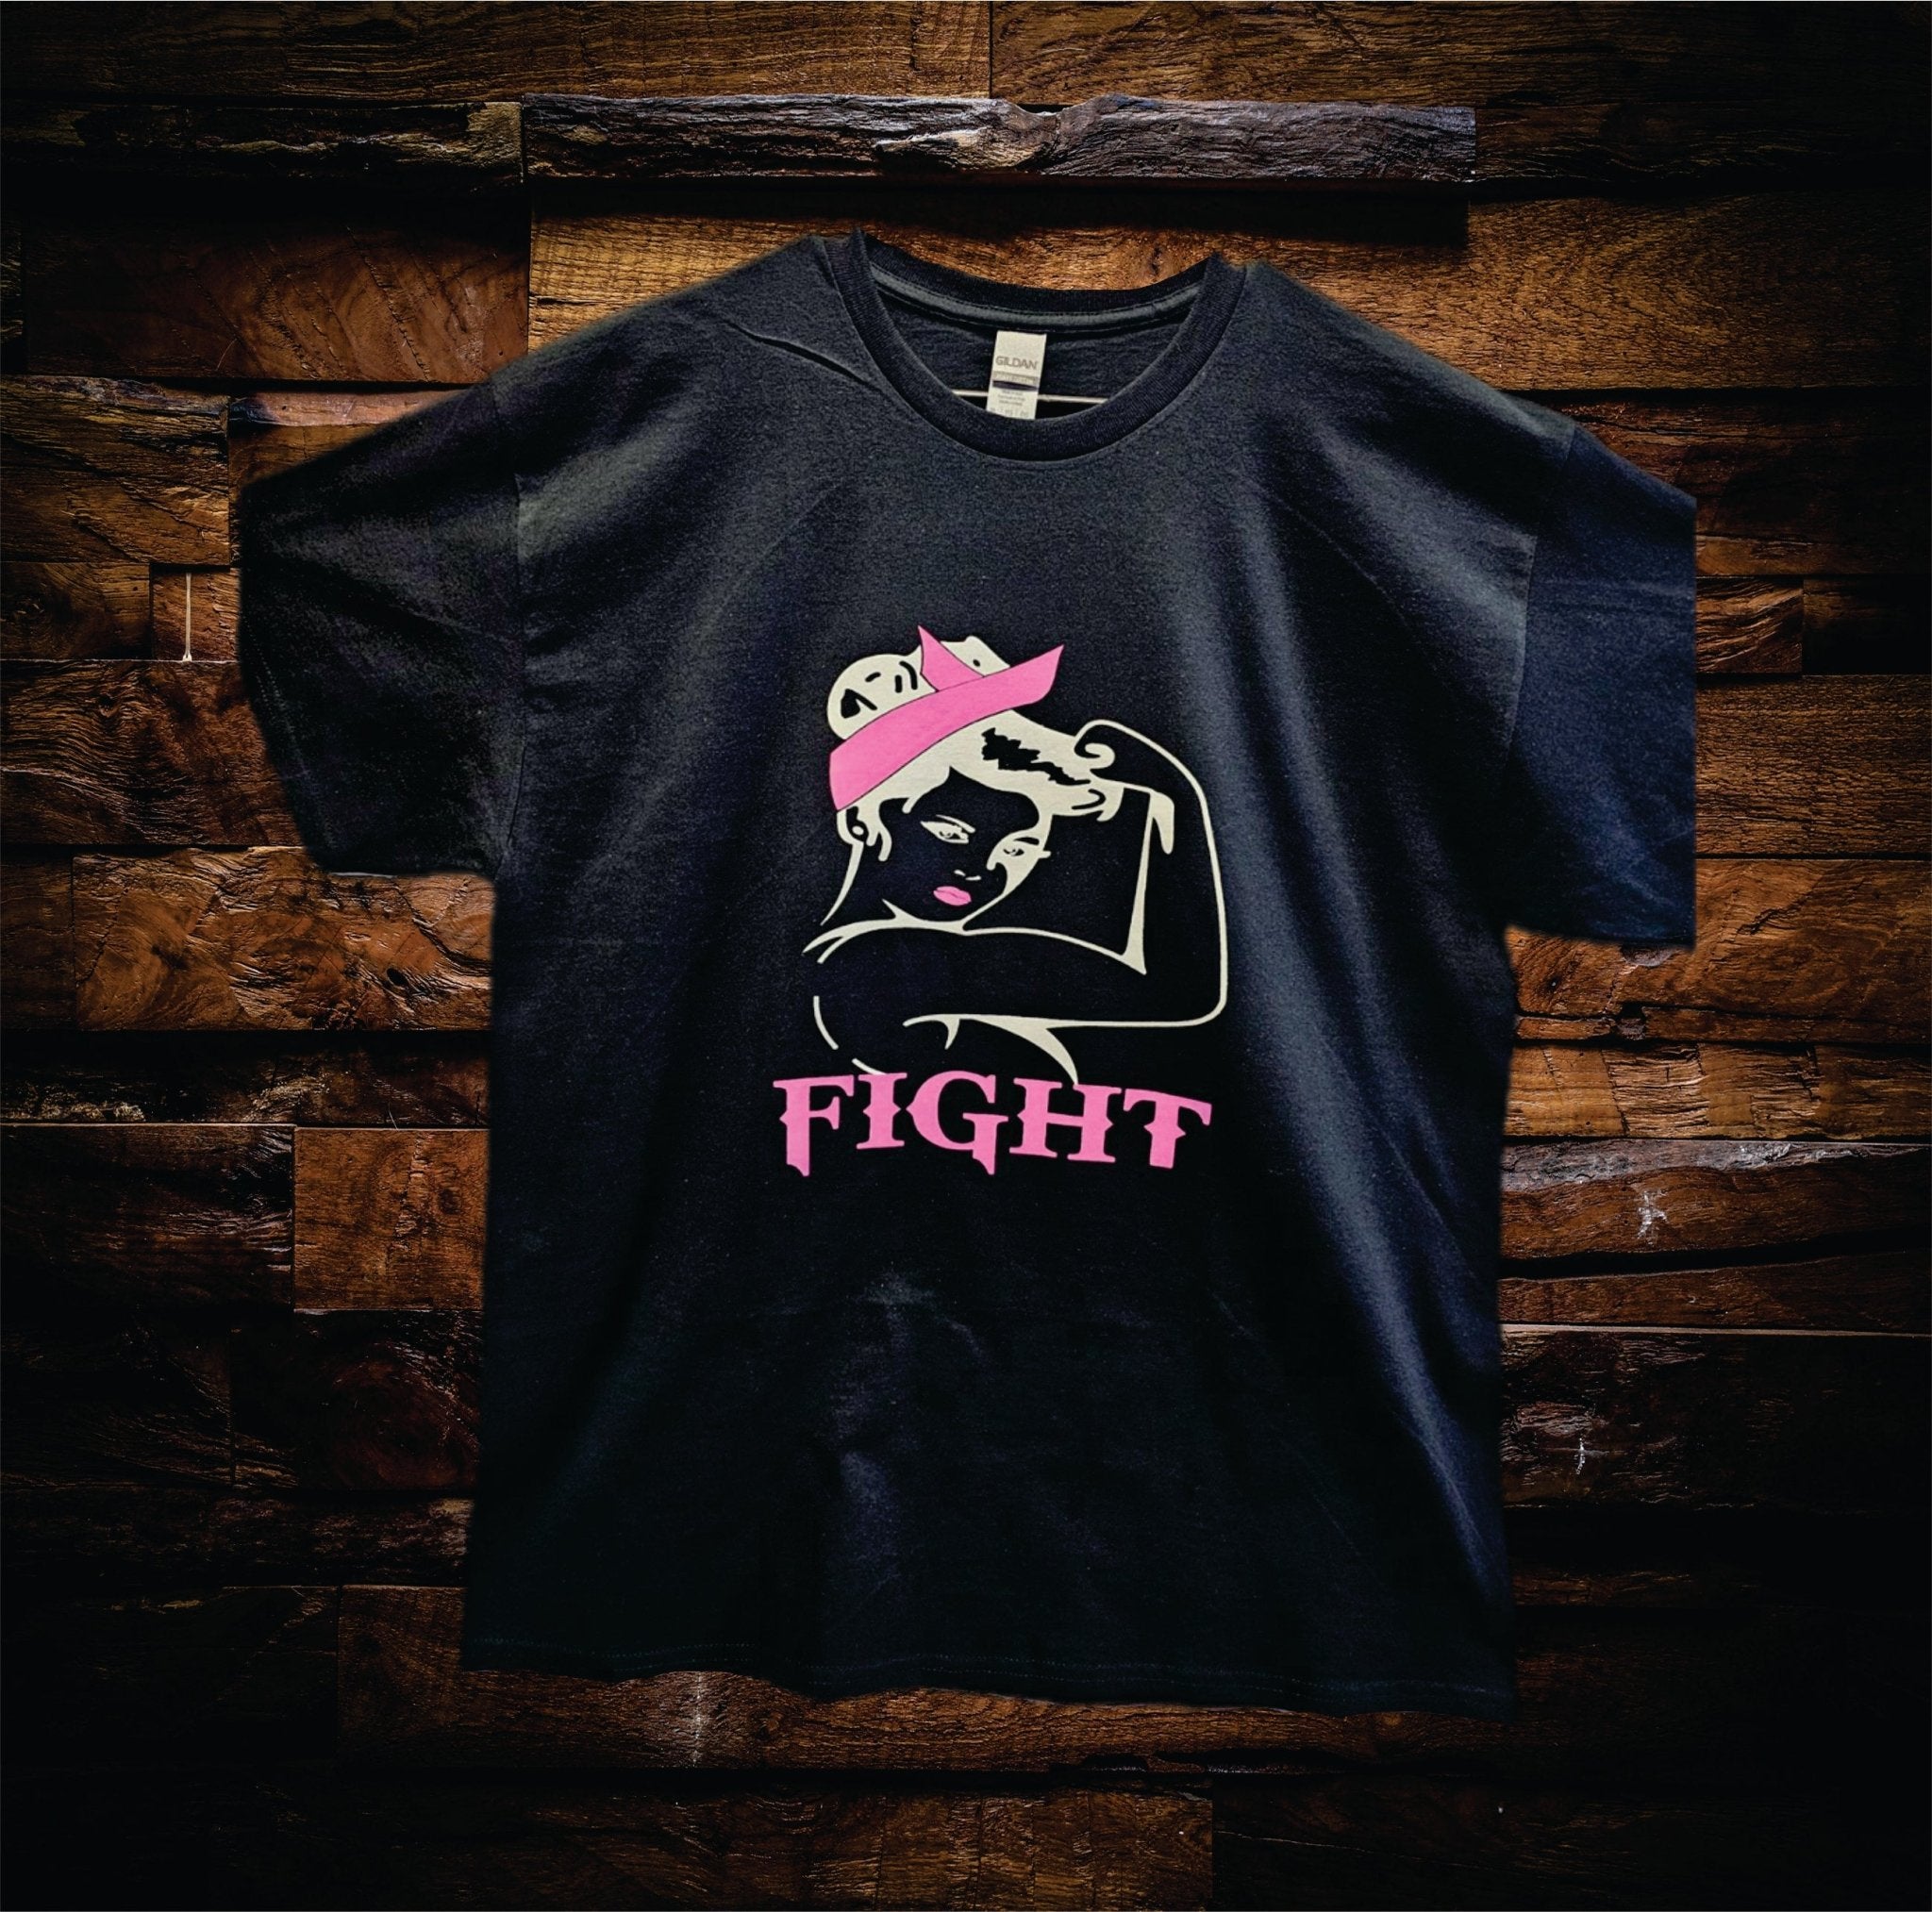 Fight Girl